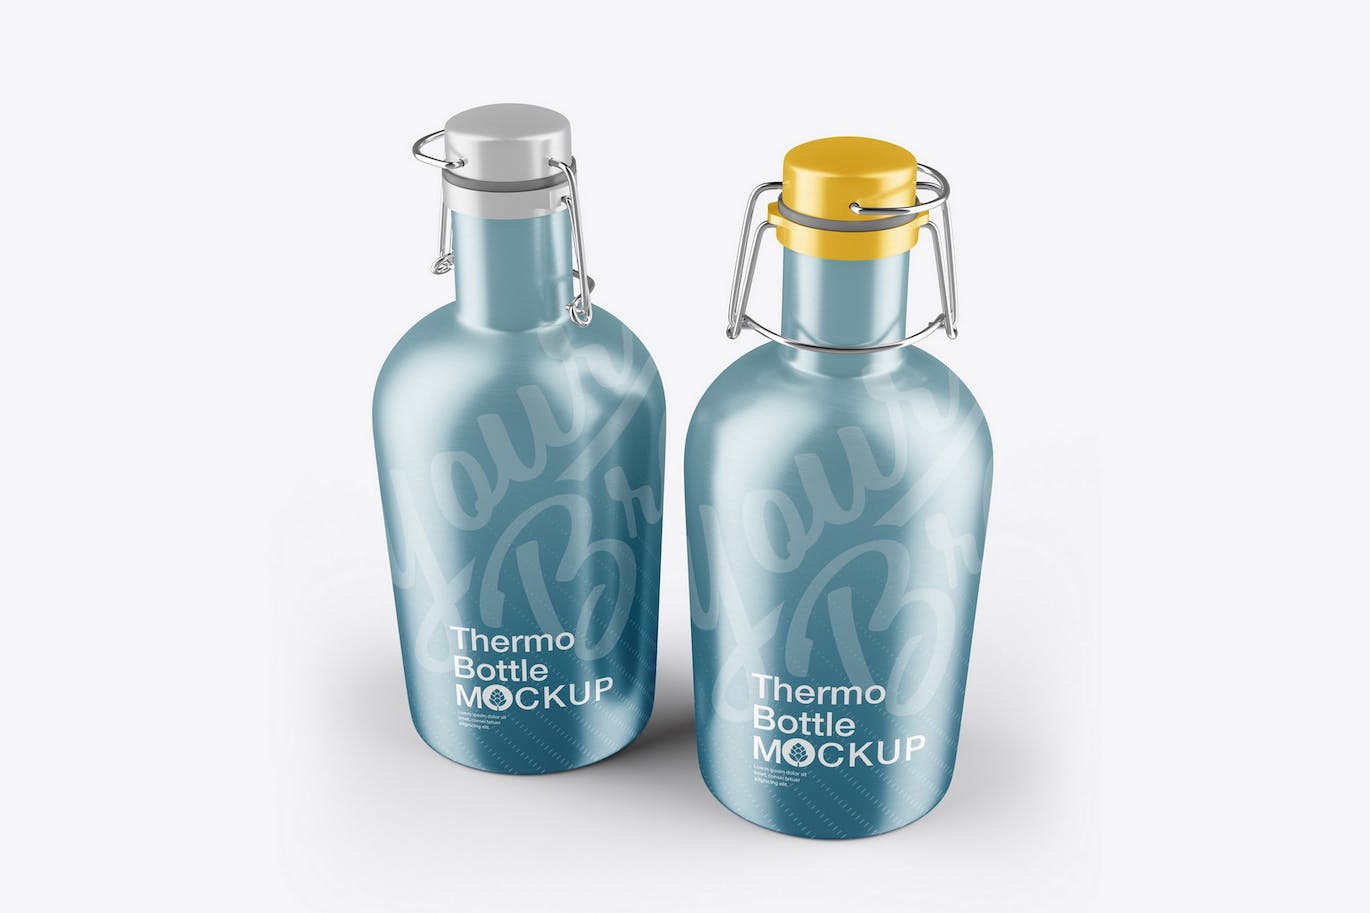 金属保温瓶外观设计样机 Metallic Thermo Bottle Mockup 样机素材 第1张